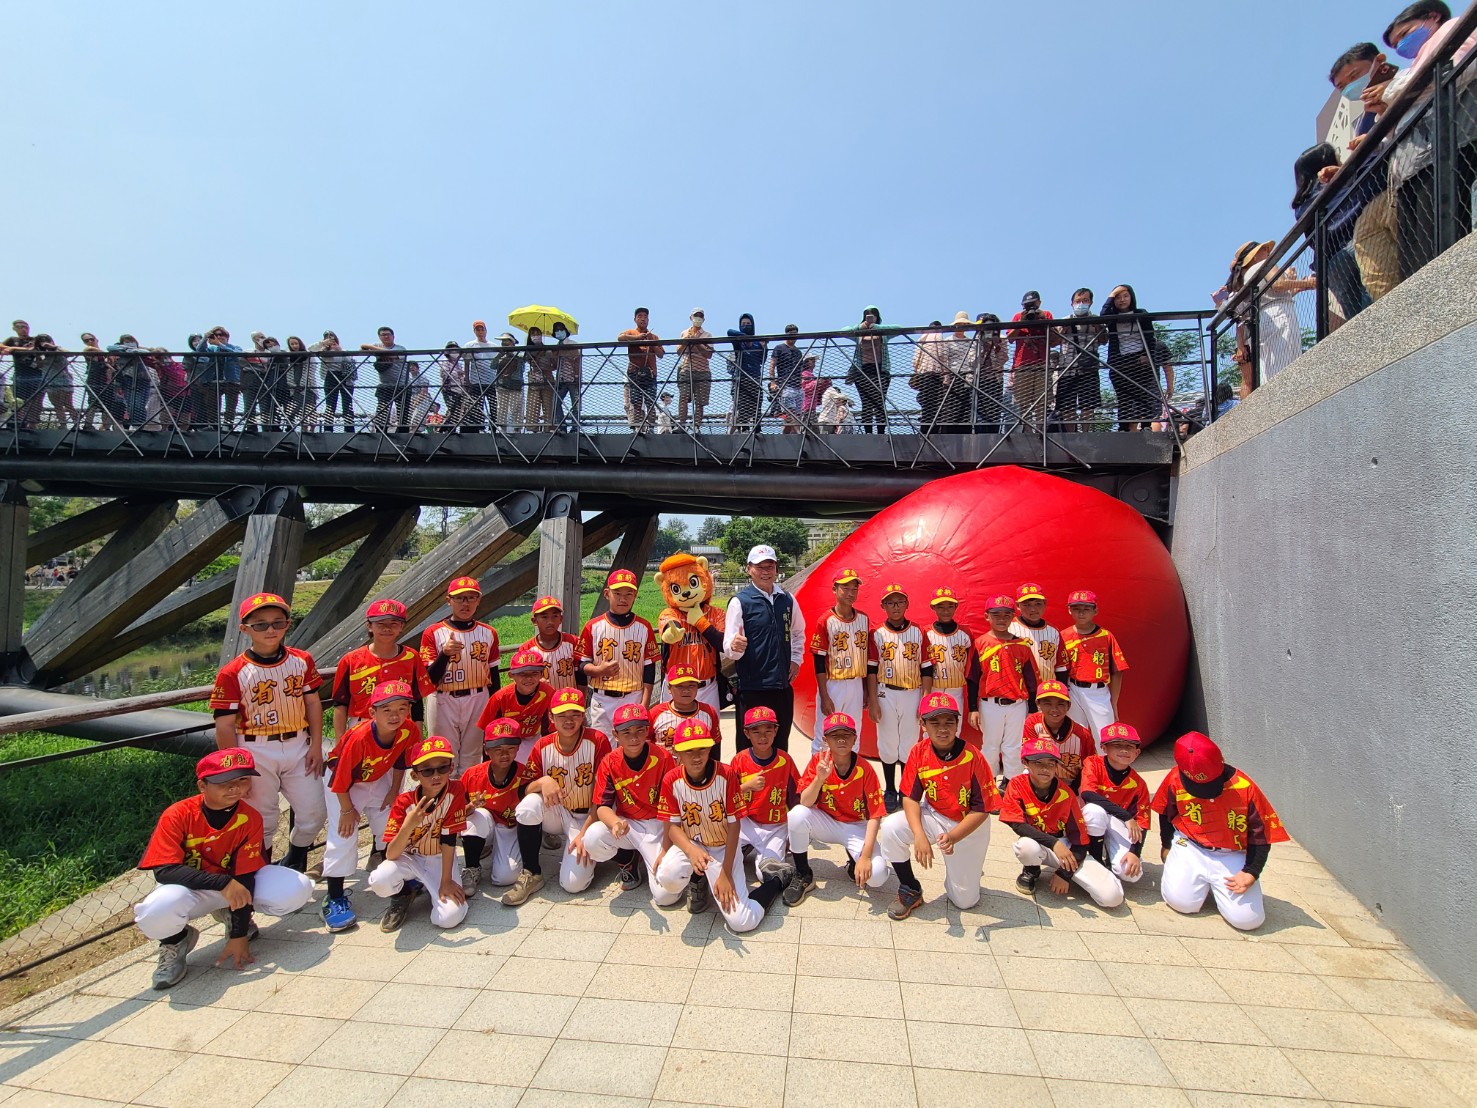 紅球降臨竹溪公園月見橋  南市體育局陳良乾局長帶領臺南棒球隊擊出紅不讓